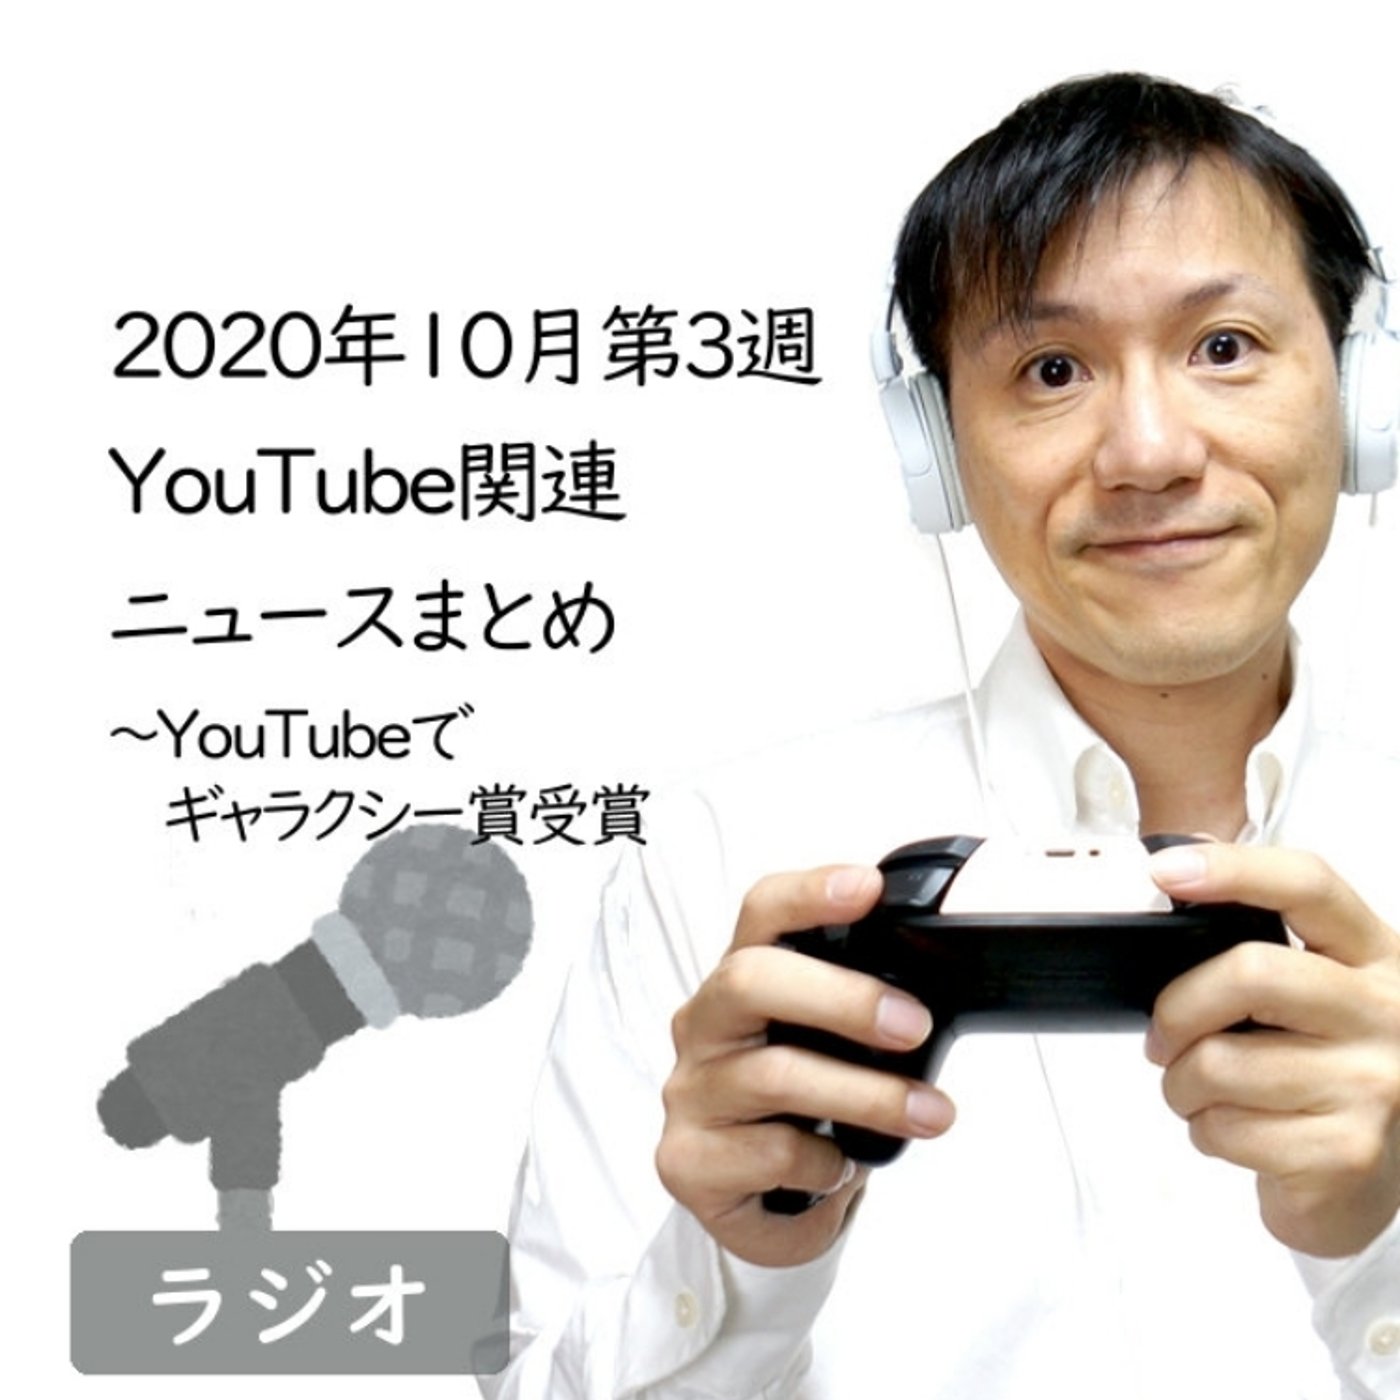 【#227】2020年10月第3週YouTube関連ニュースまとめ～ギャラクシー